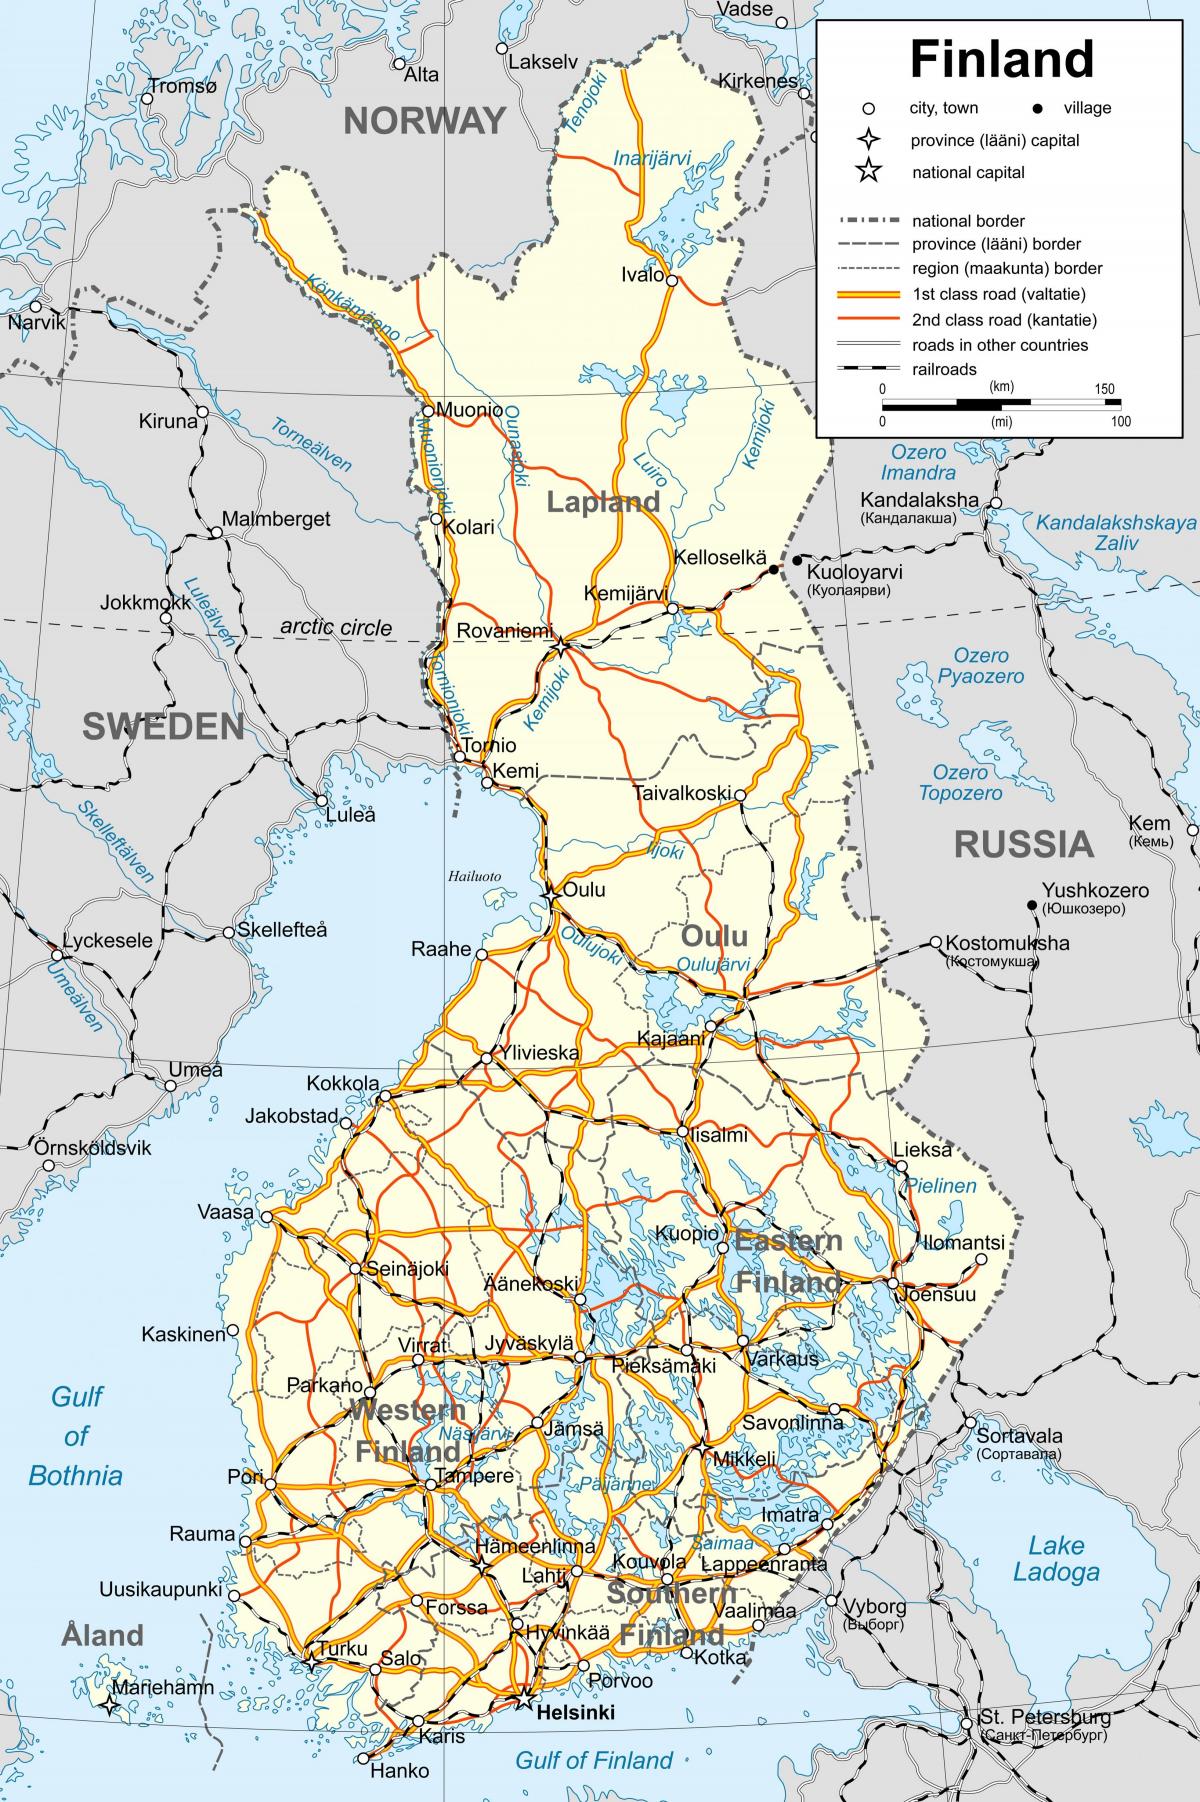 નકશો ફિનલેન્ડ રાજકીય